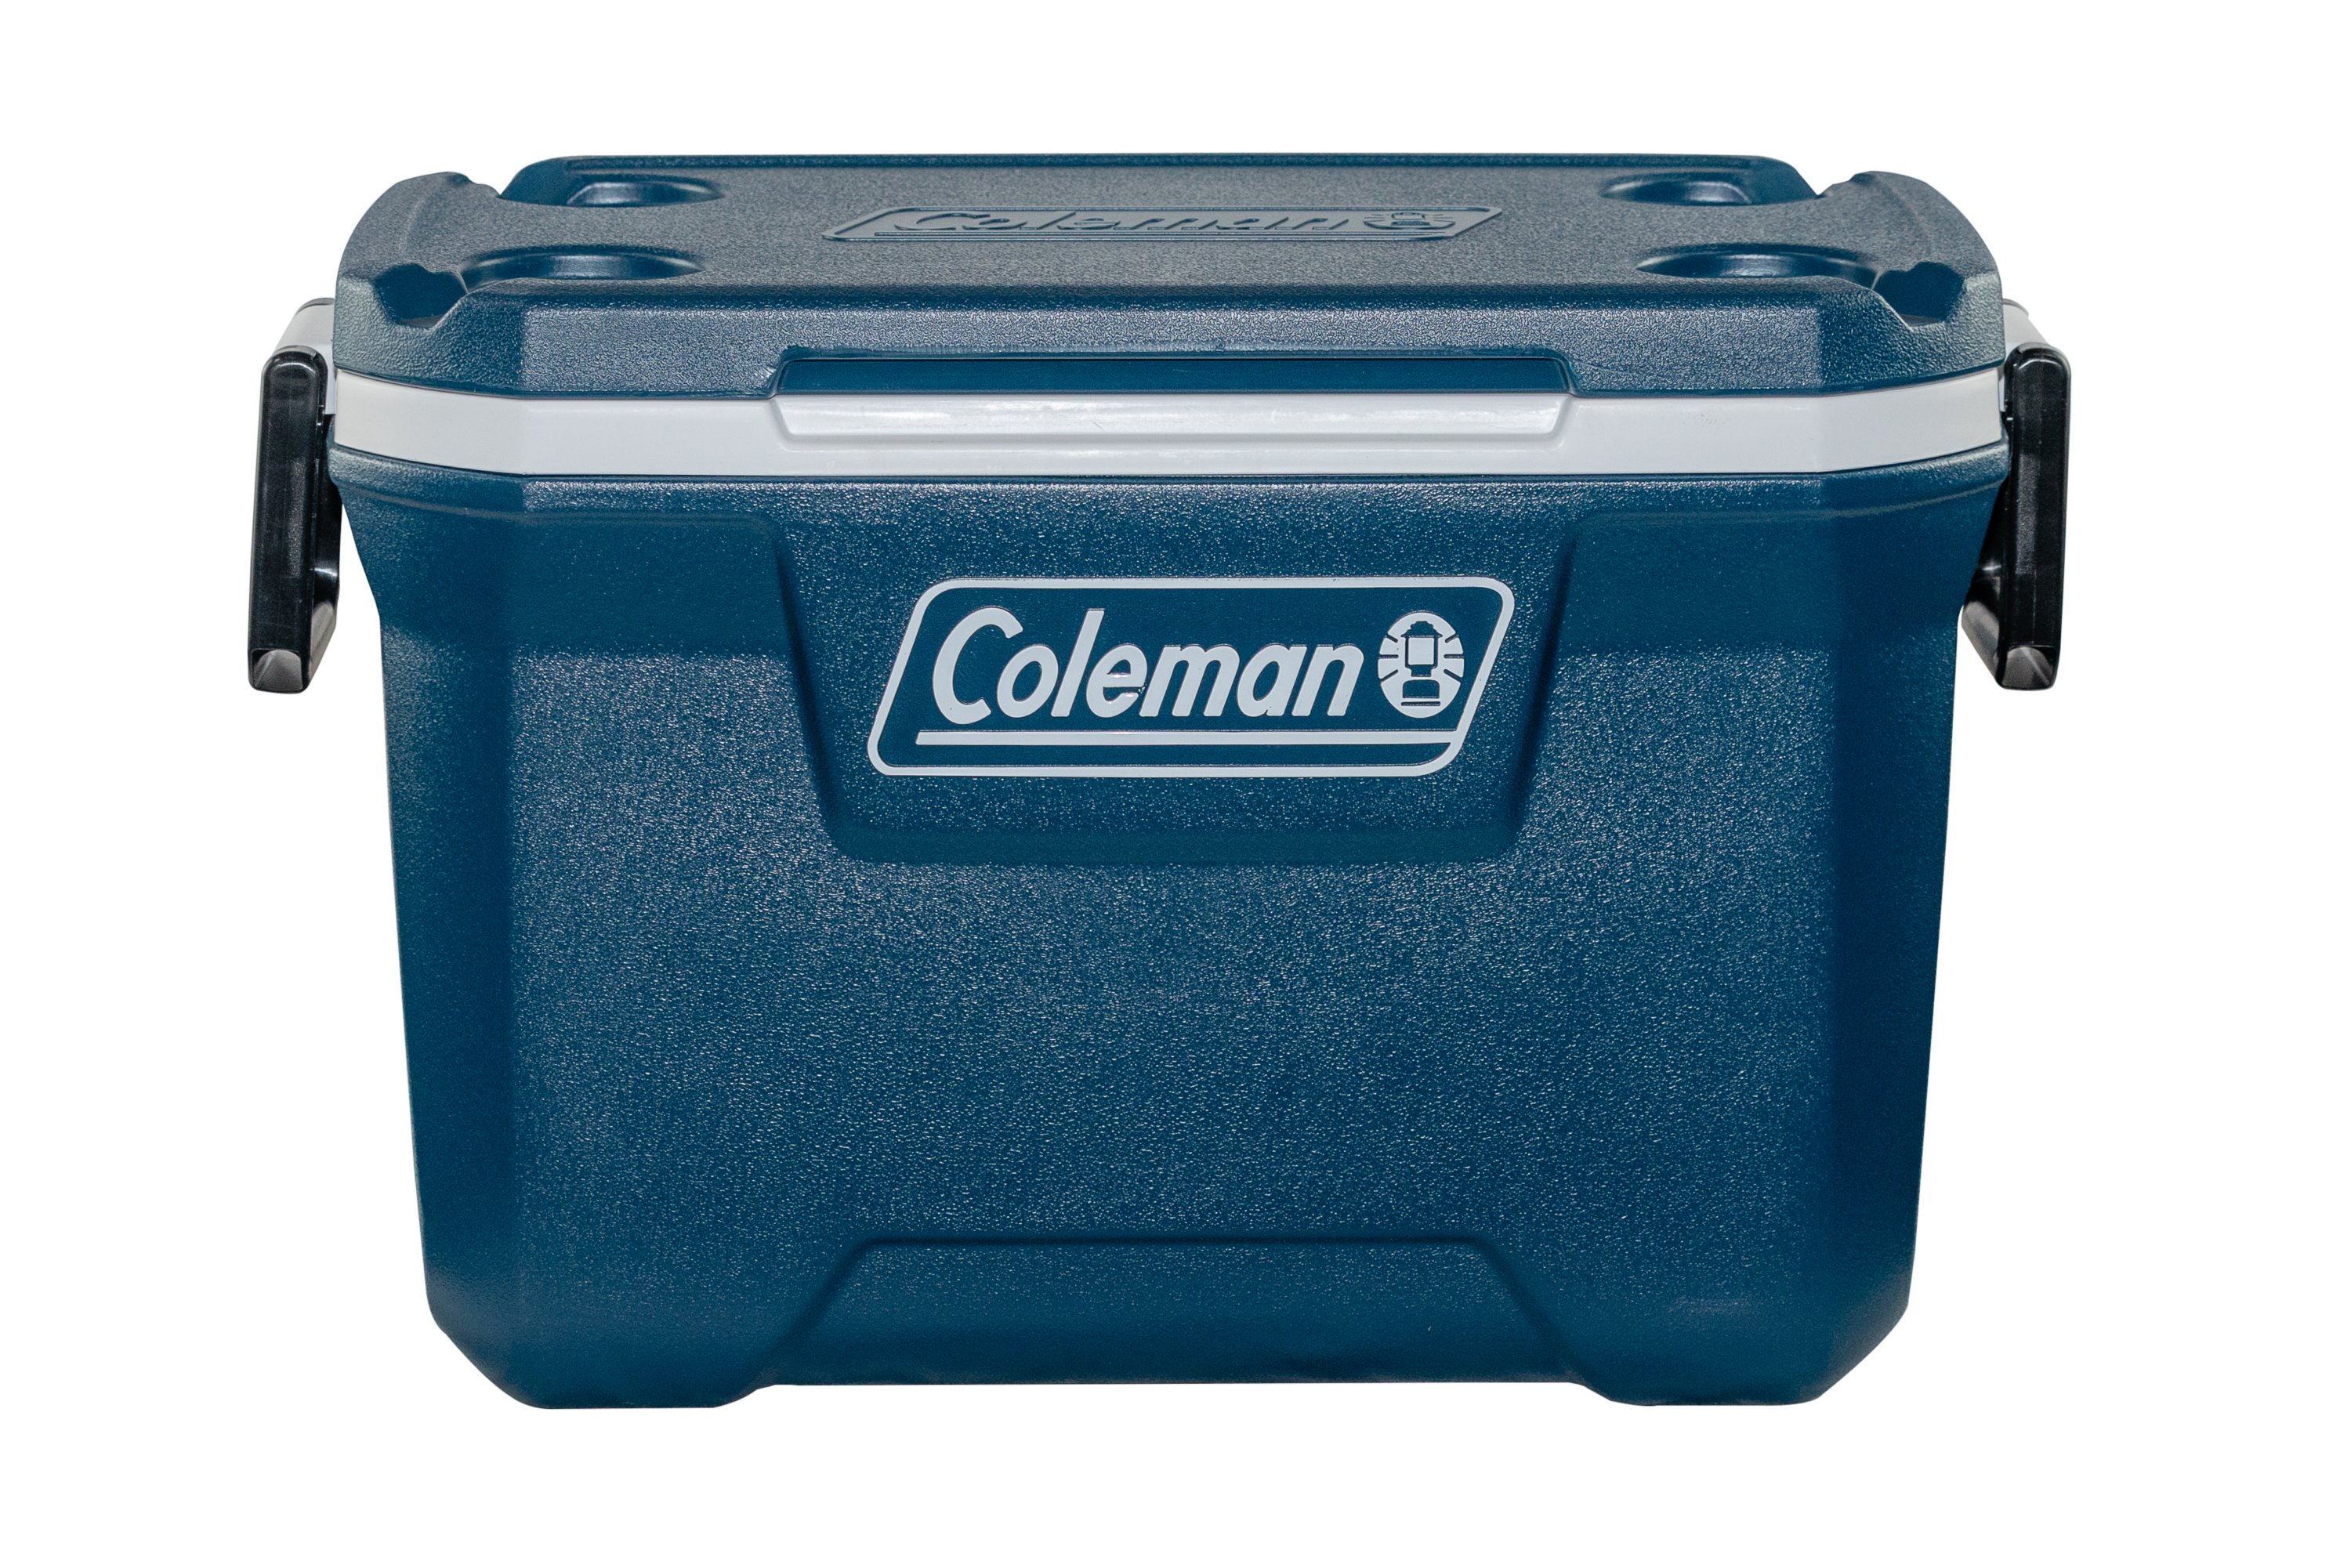 52QT Xtreme™ Cooler Box